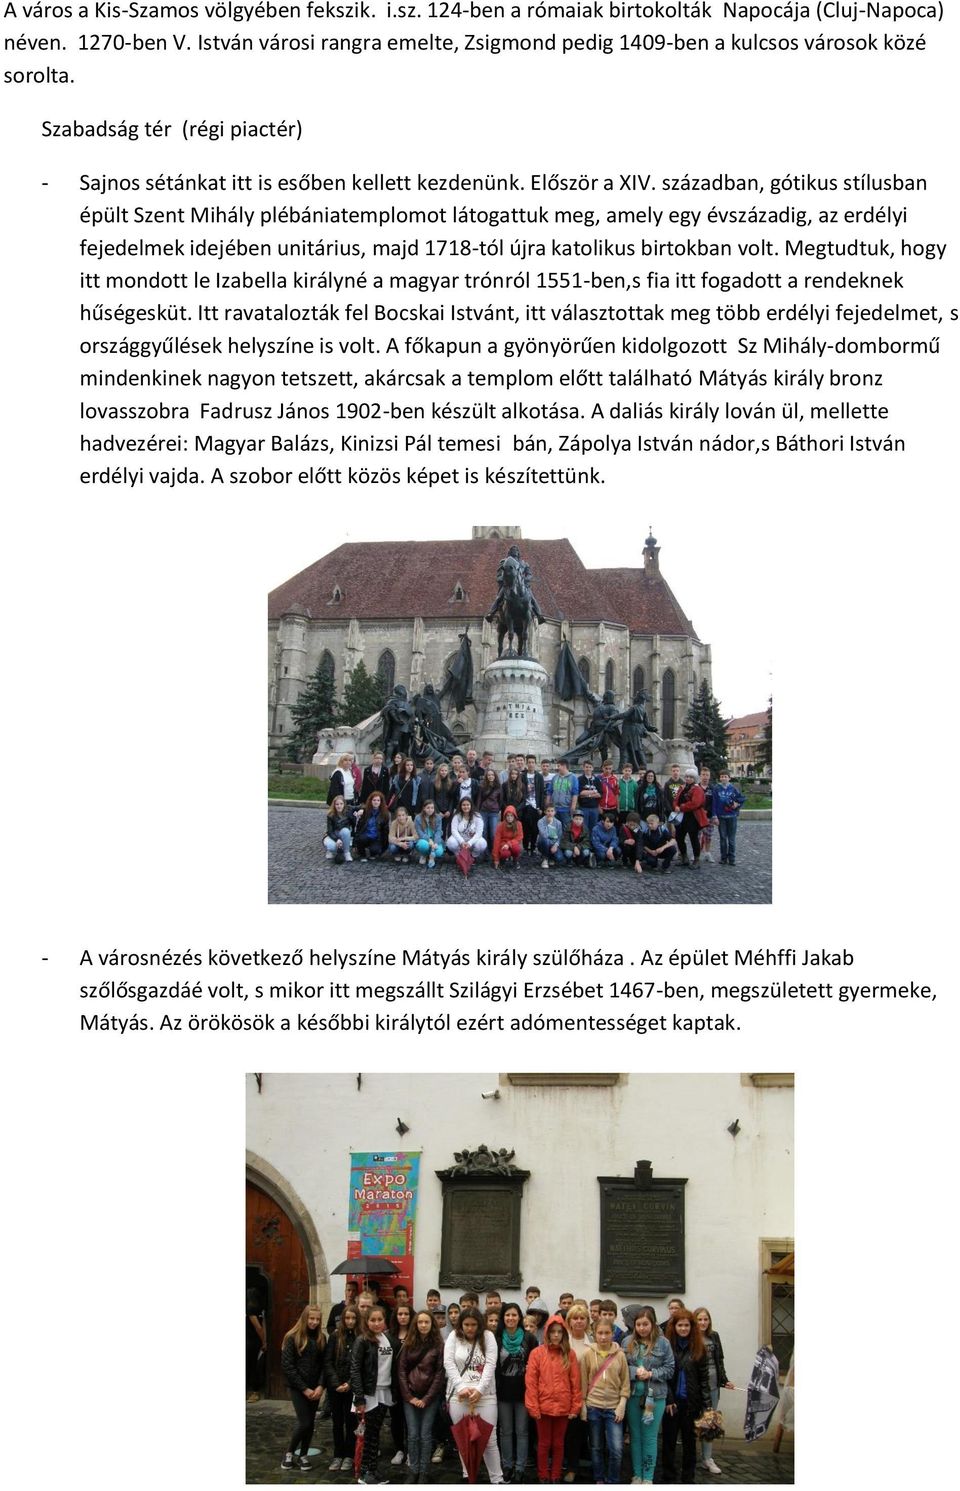 században, gótikus stílusban épült Szent Mihály plébániatemplomot látogattuk meg, amely egy évszázadig, az erdélyi fejedelmek idejében unitárius, majd 1718-tól újra katolikus birtokban volt.